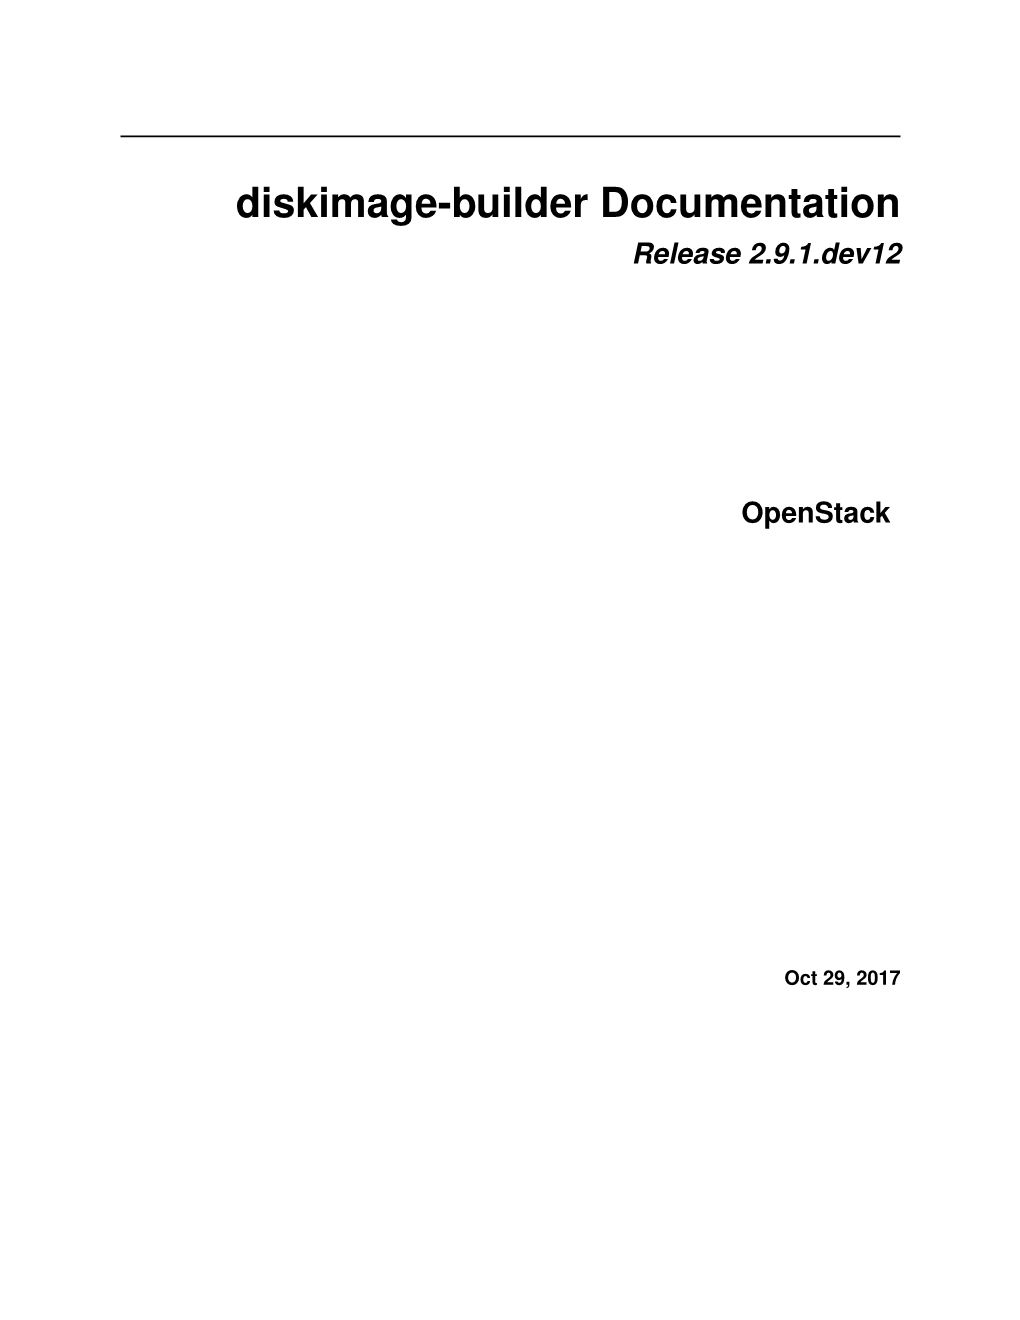 Diskimage-Builder Documentation Release 2.9.1.Dev12